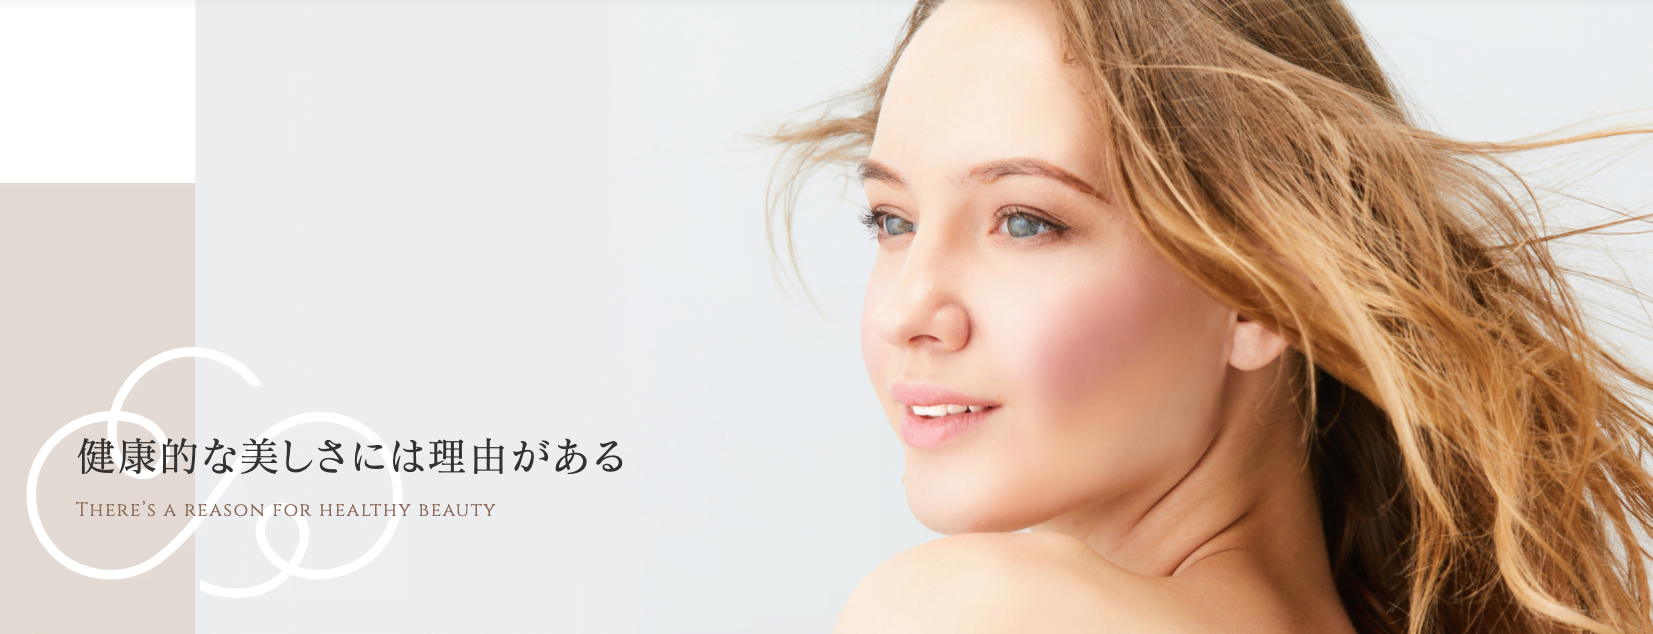 「広島ステーションクリニック美容皮膚科」は肌悩みを相談しやすい